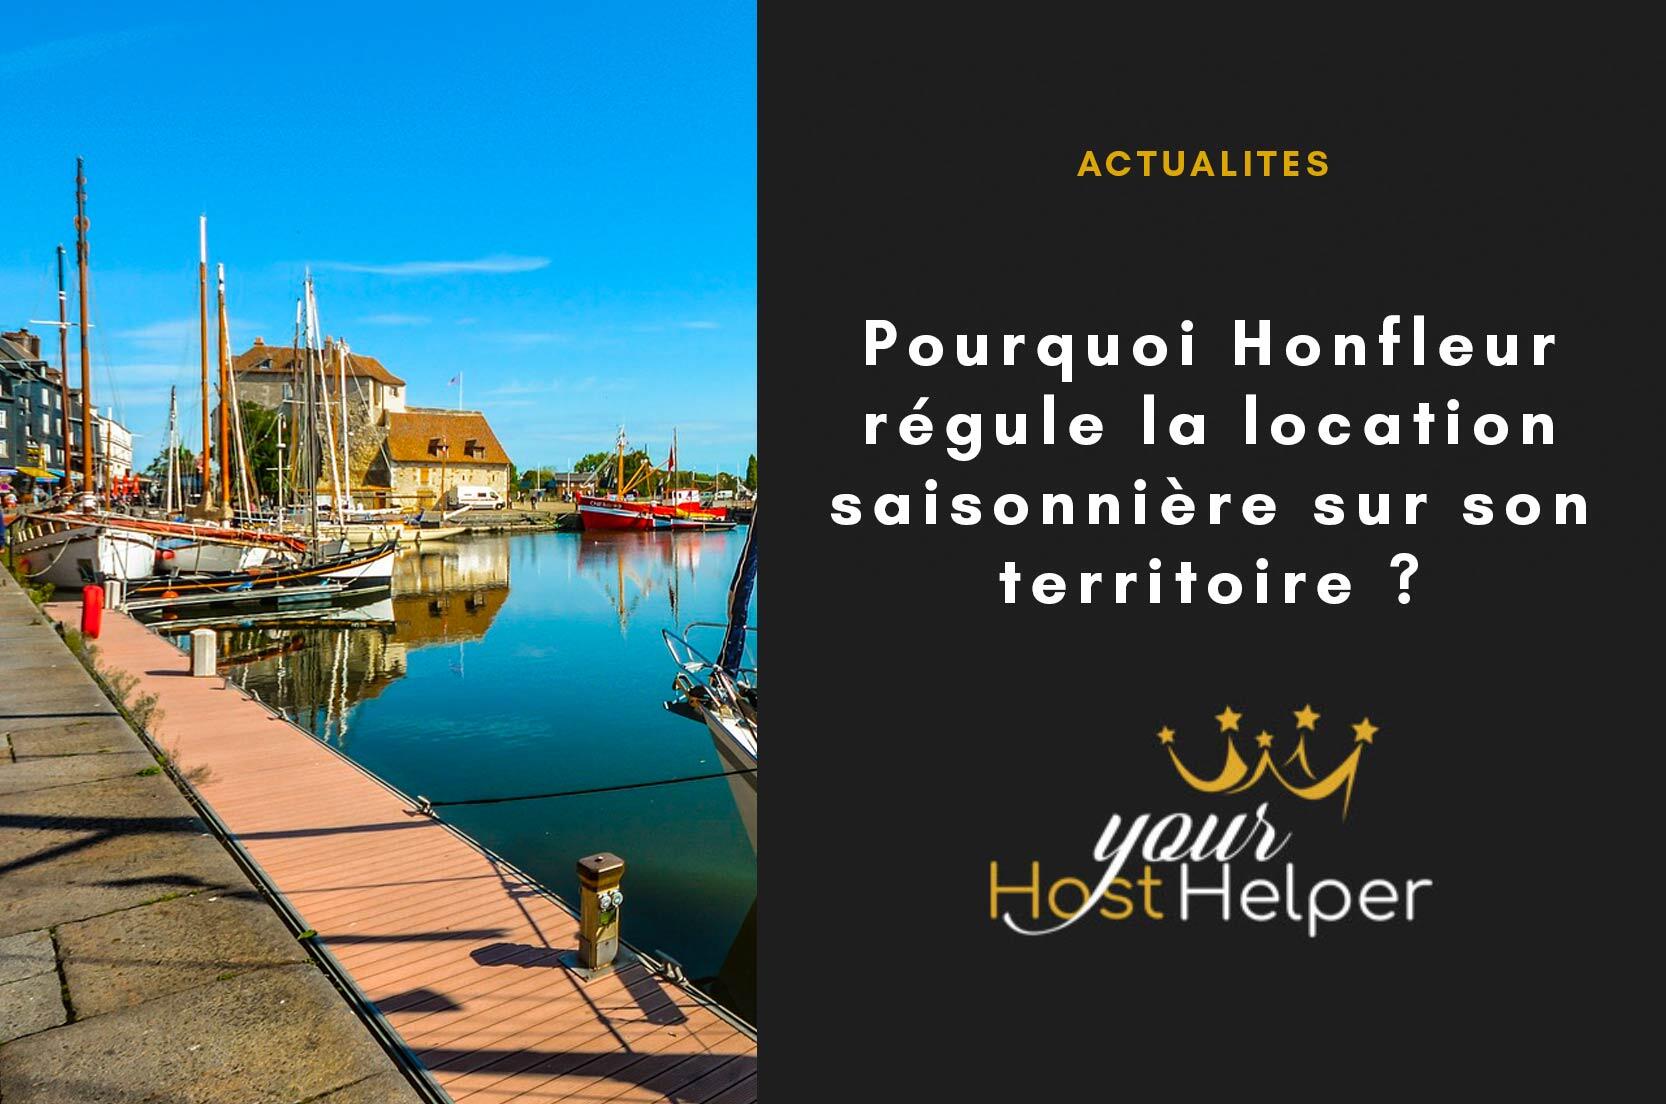 You are currently viewing Pourquoi Honfleur régule la location saisonnière sur son territoire ?